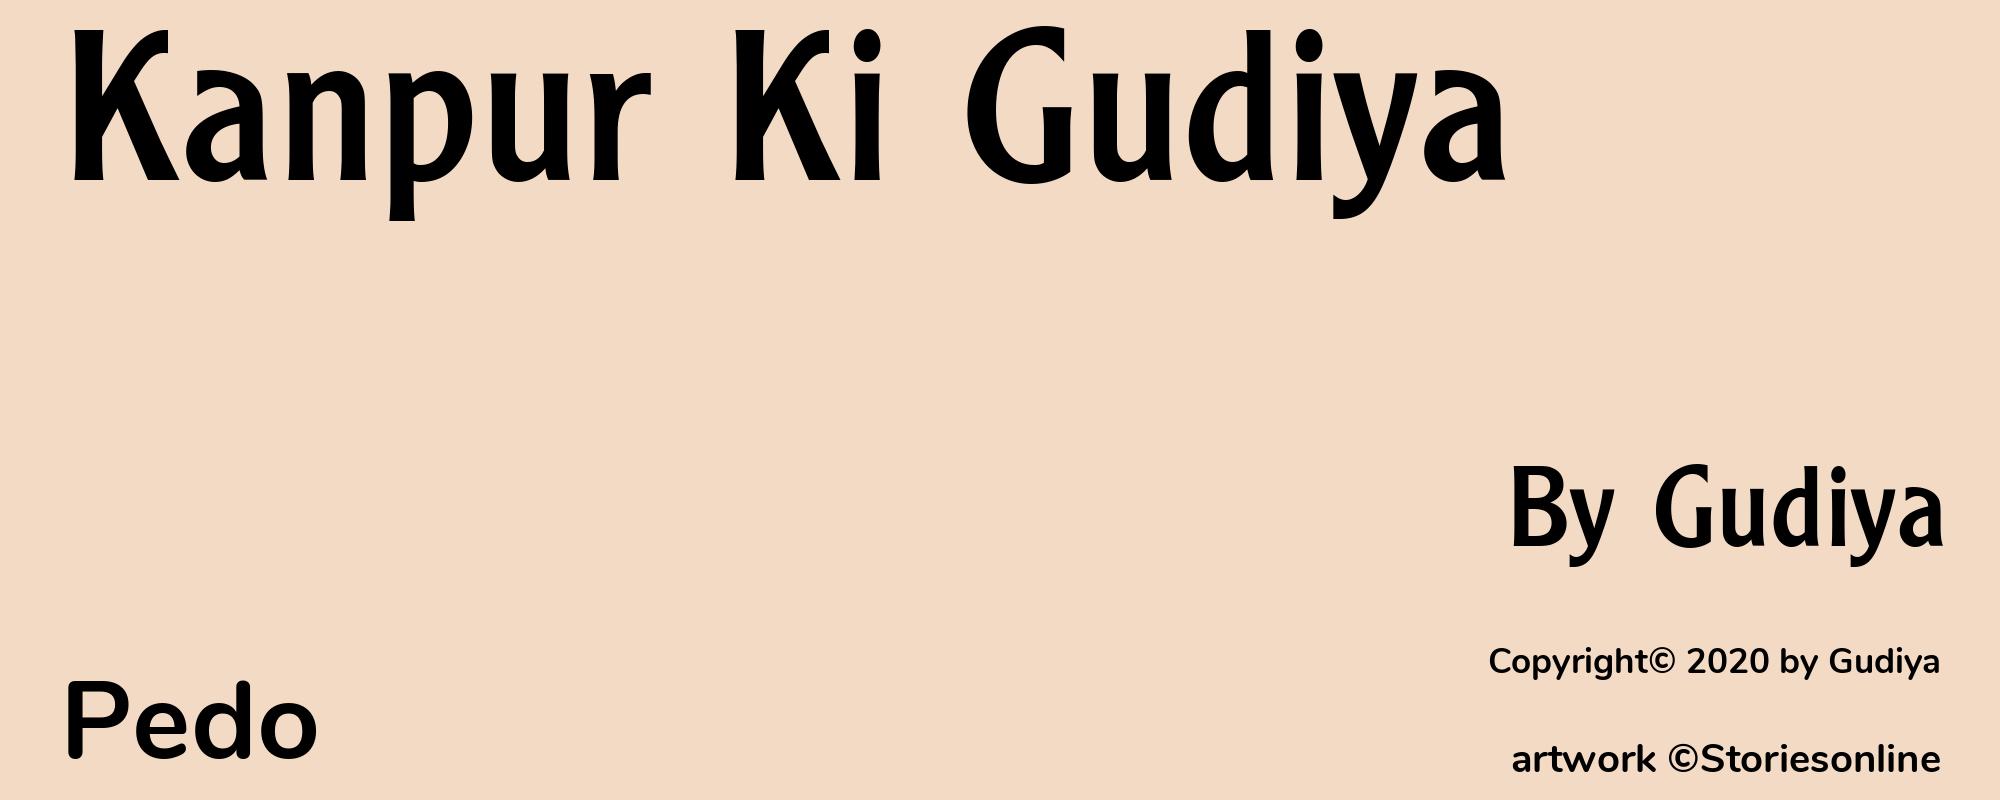 Kanpur Ki Gudiya - Cover